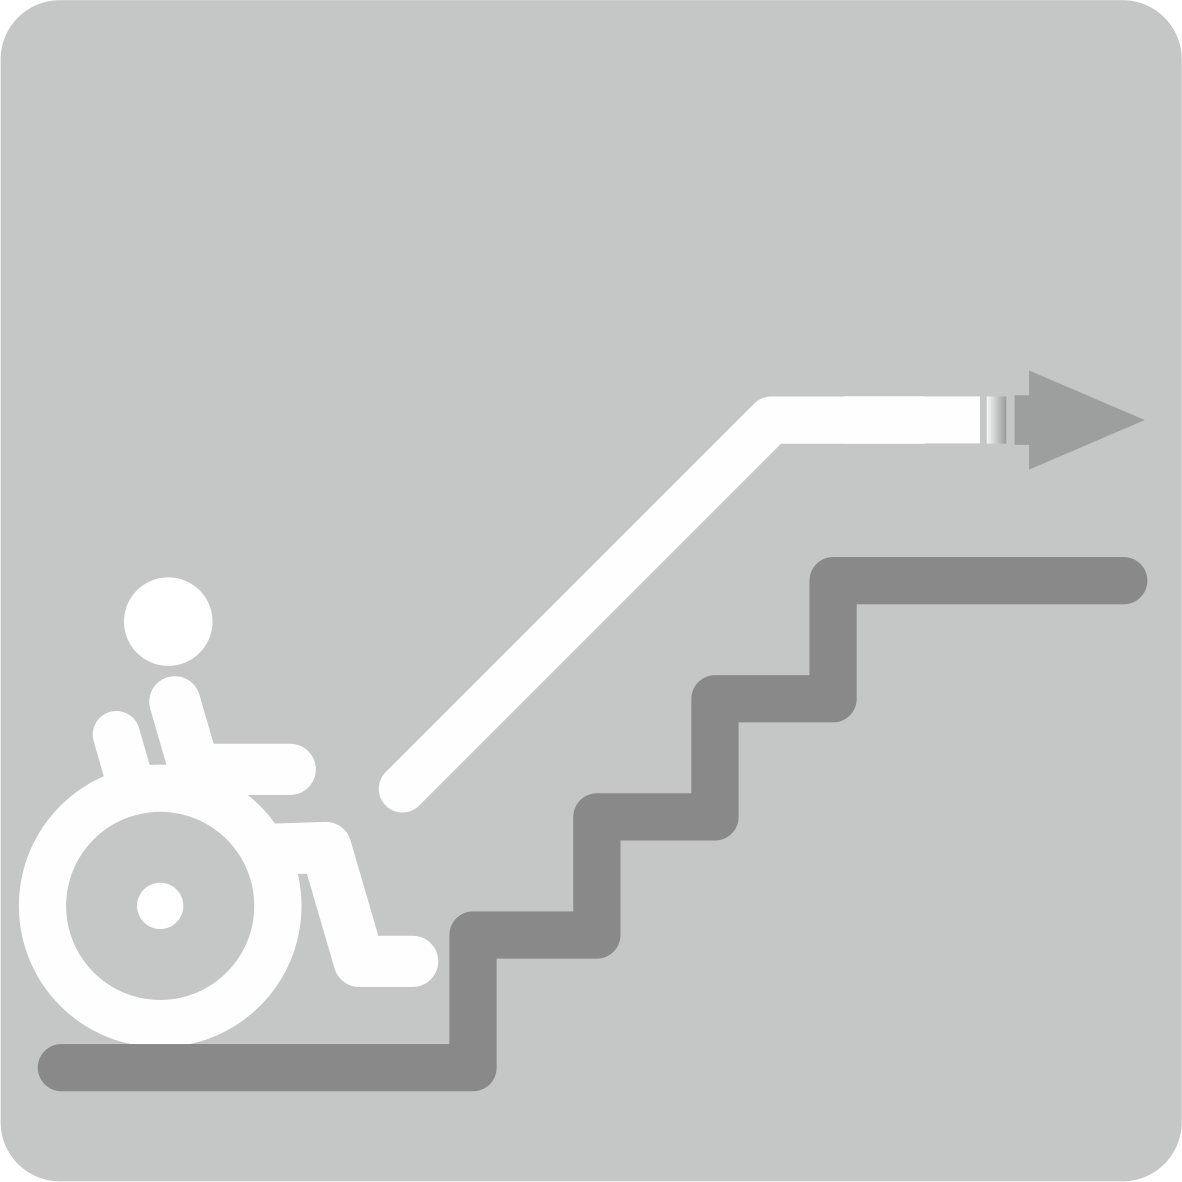 Наклонный подъемник для инвалидов по прямой траектории